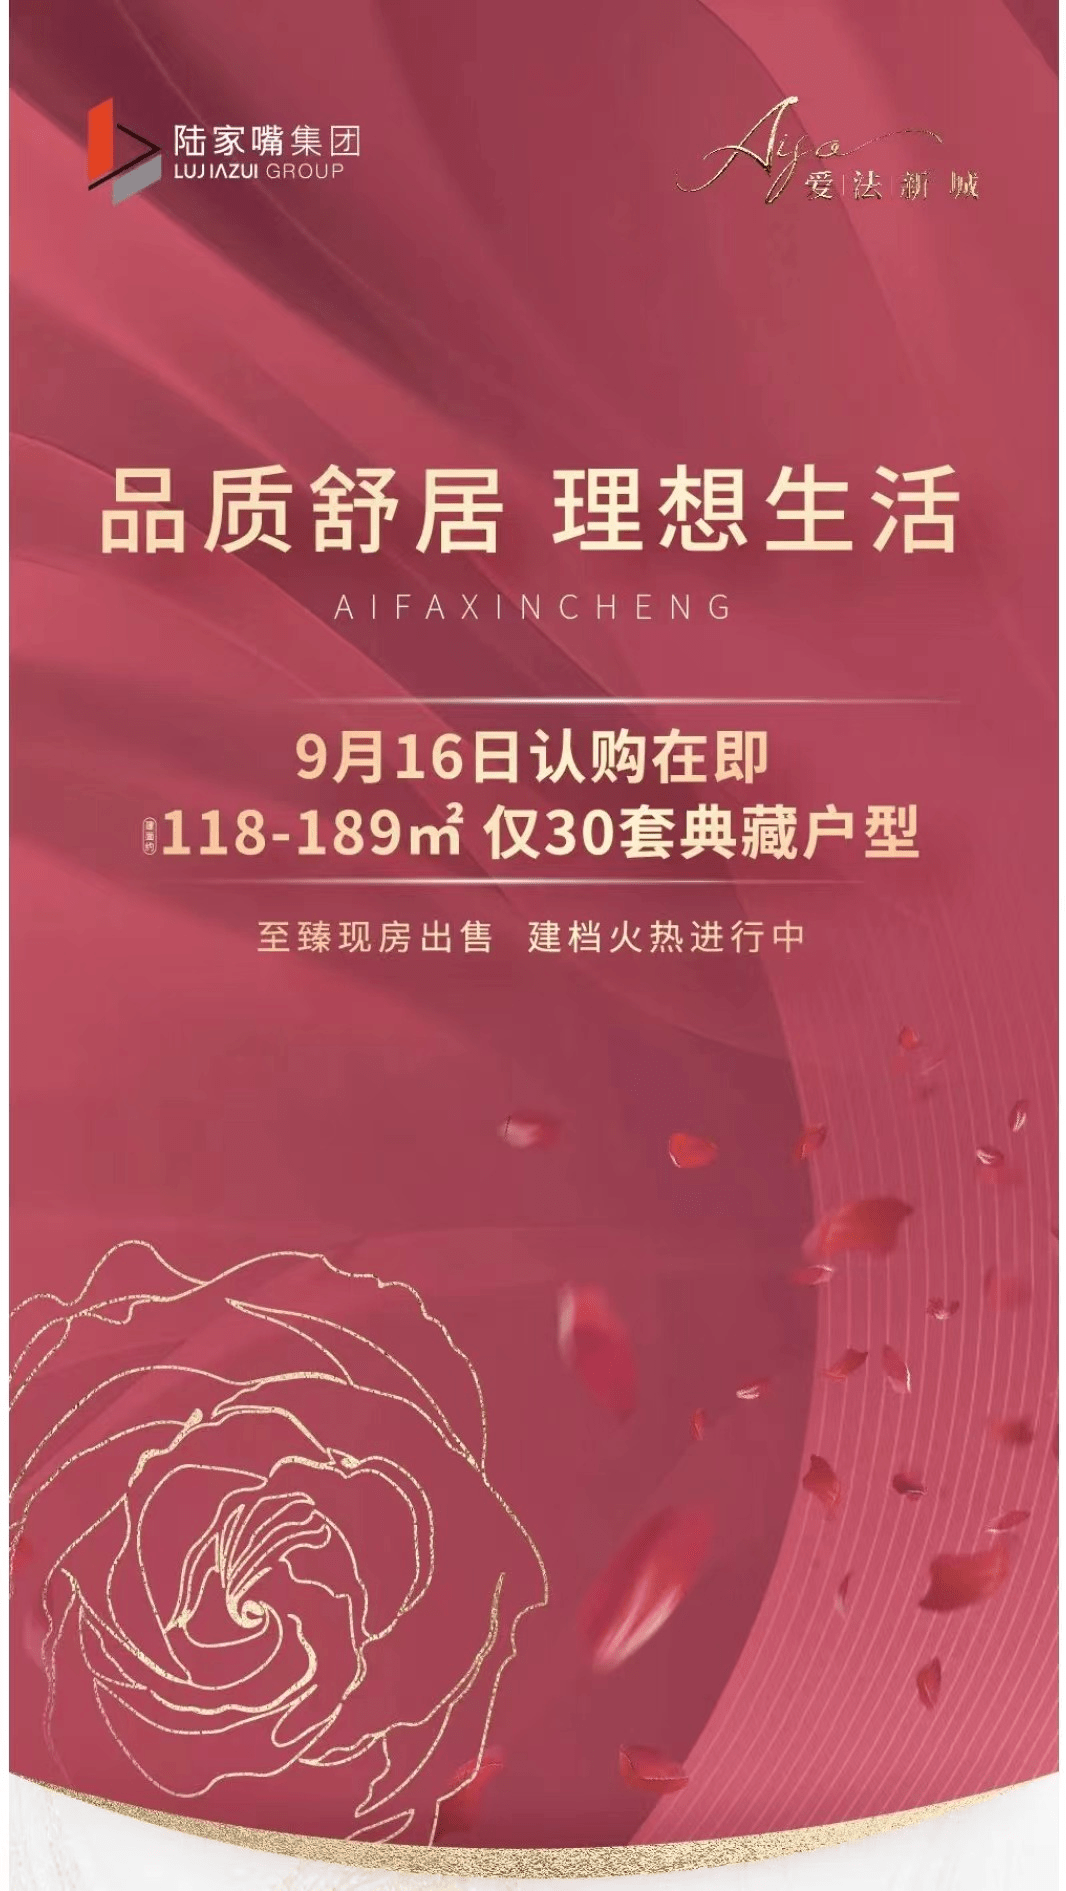 上海爱法新城将于9月16日开...